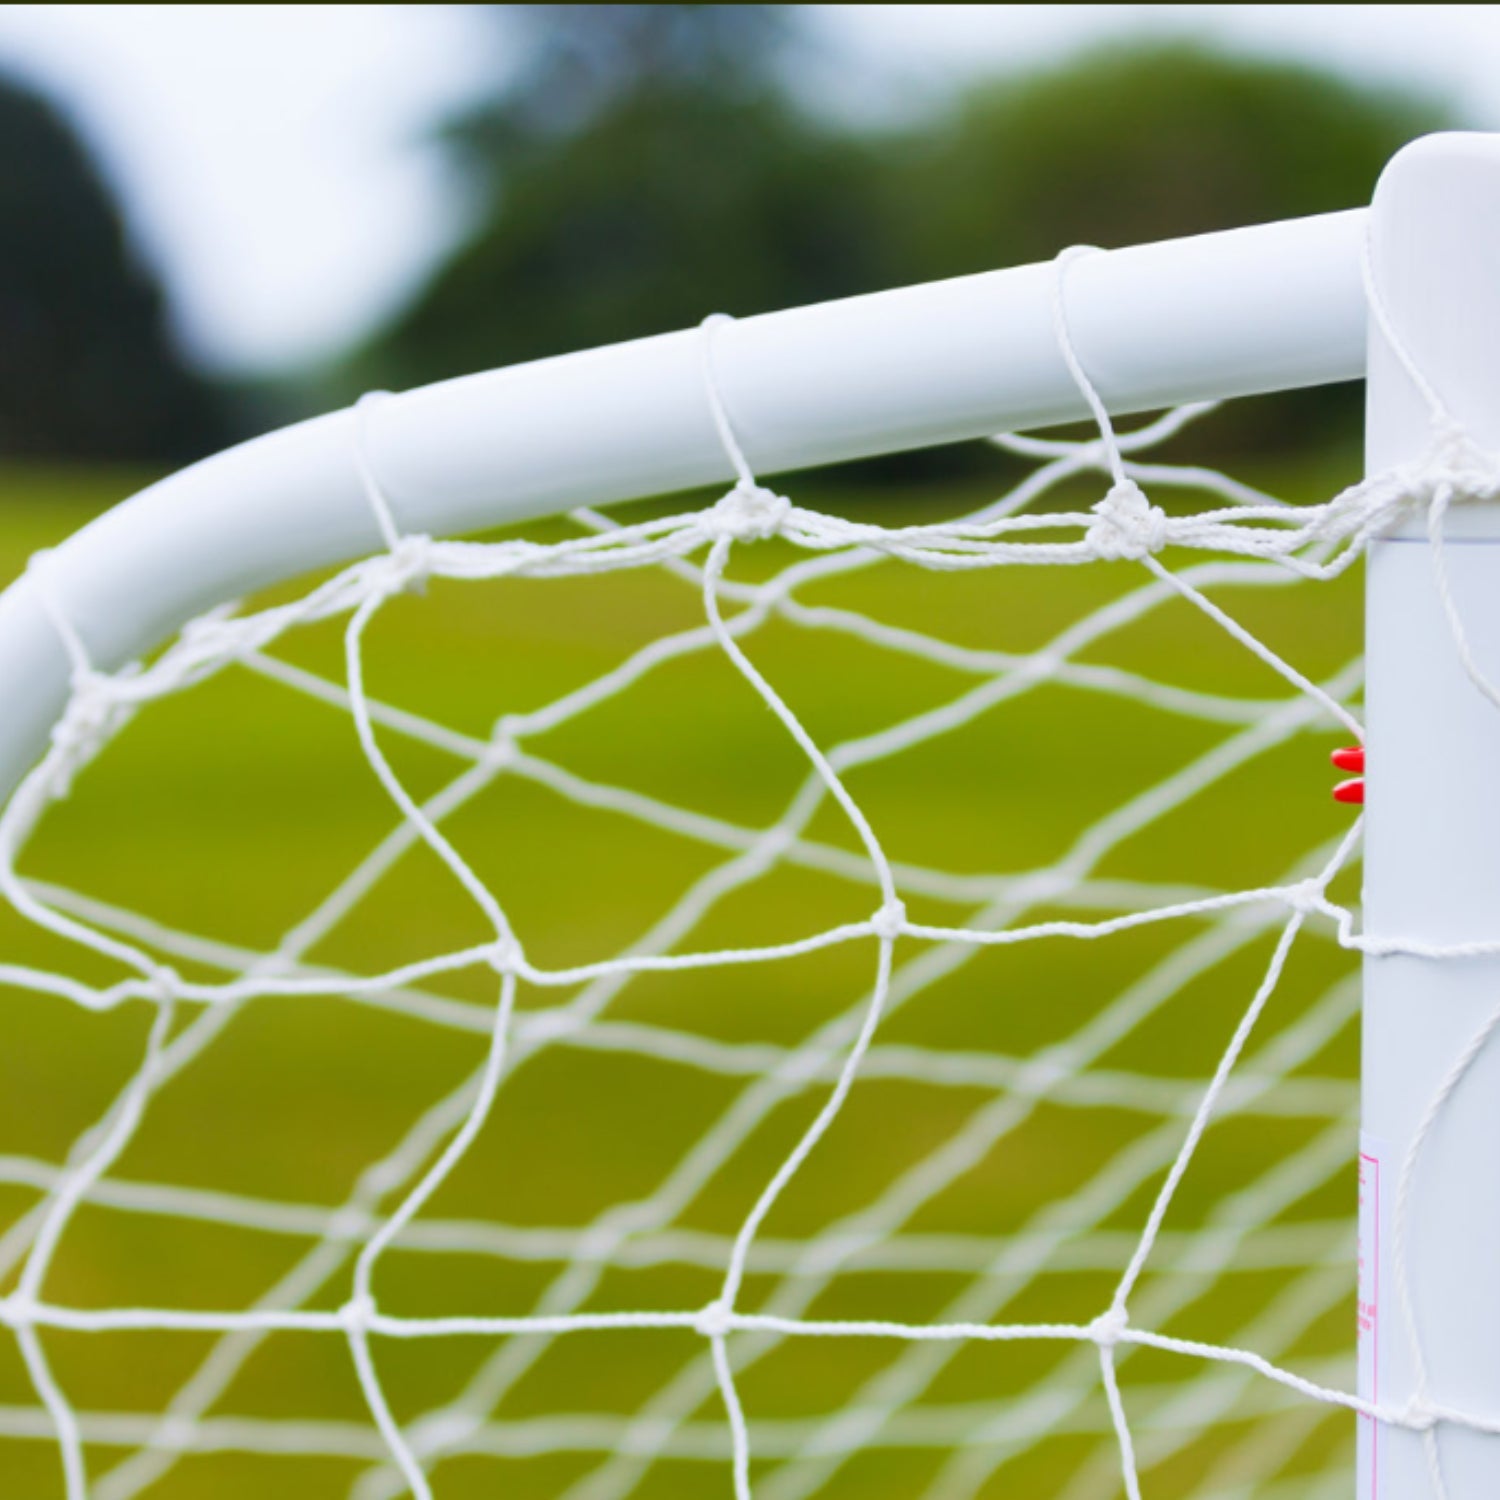 Buy Club Goal Post Net , White-Modus-Splay UK Online